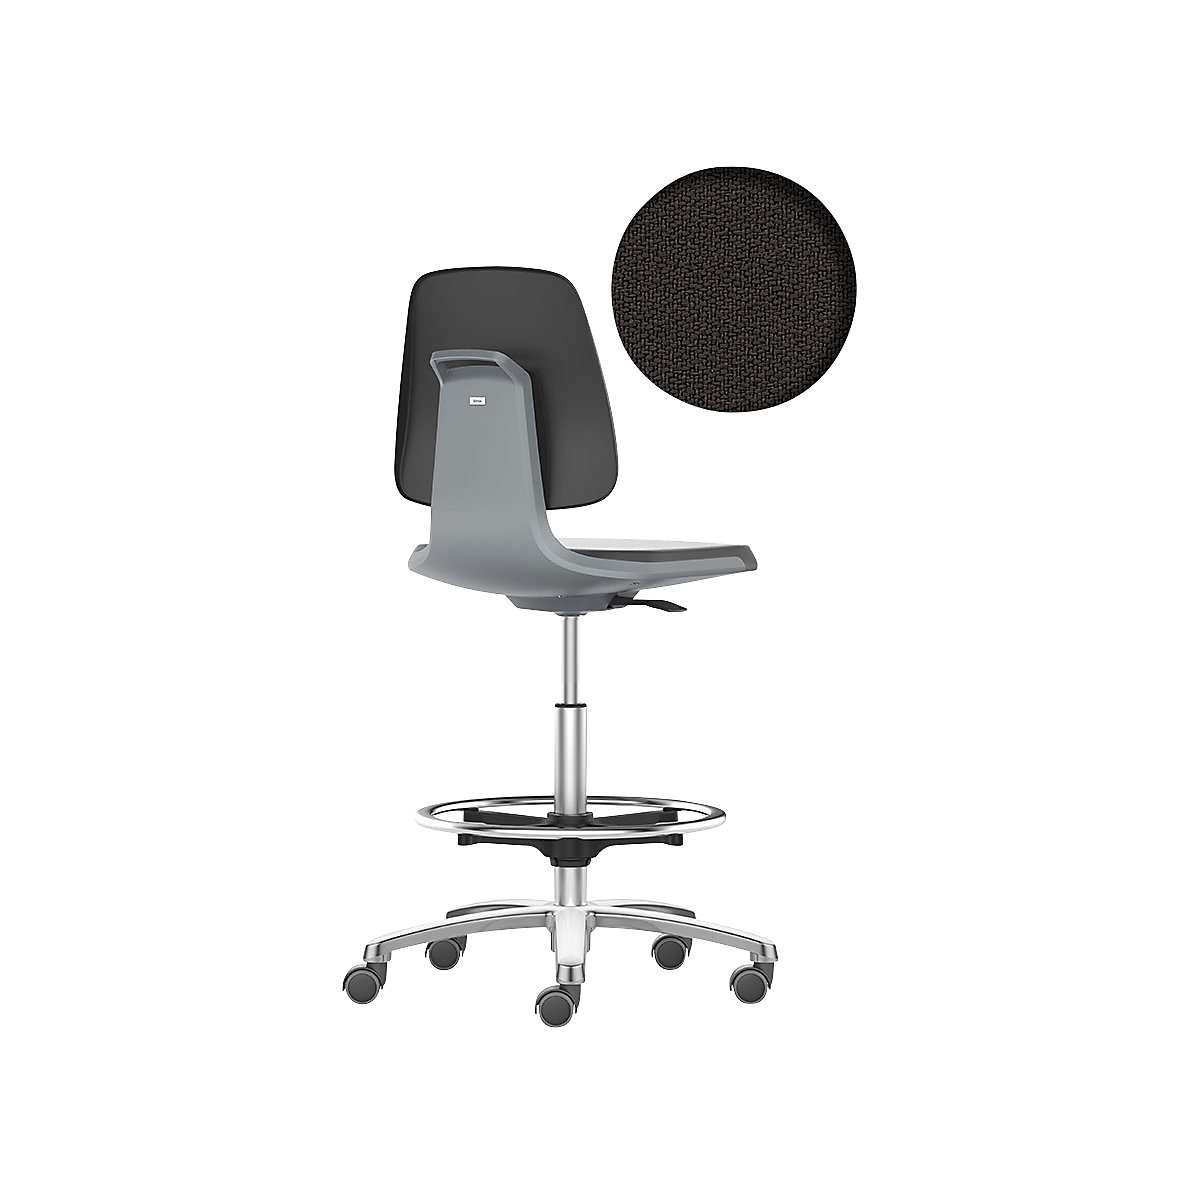 Obrotowe krzesło do pracy LABSIT – bimos, wysokie krzesło z rolkami hamującymi i podpórką na stopy, siedzisko z obiciem z materiału, antracytowy-15